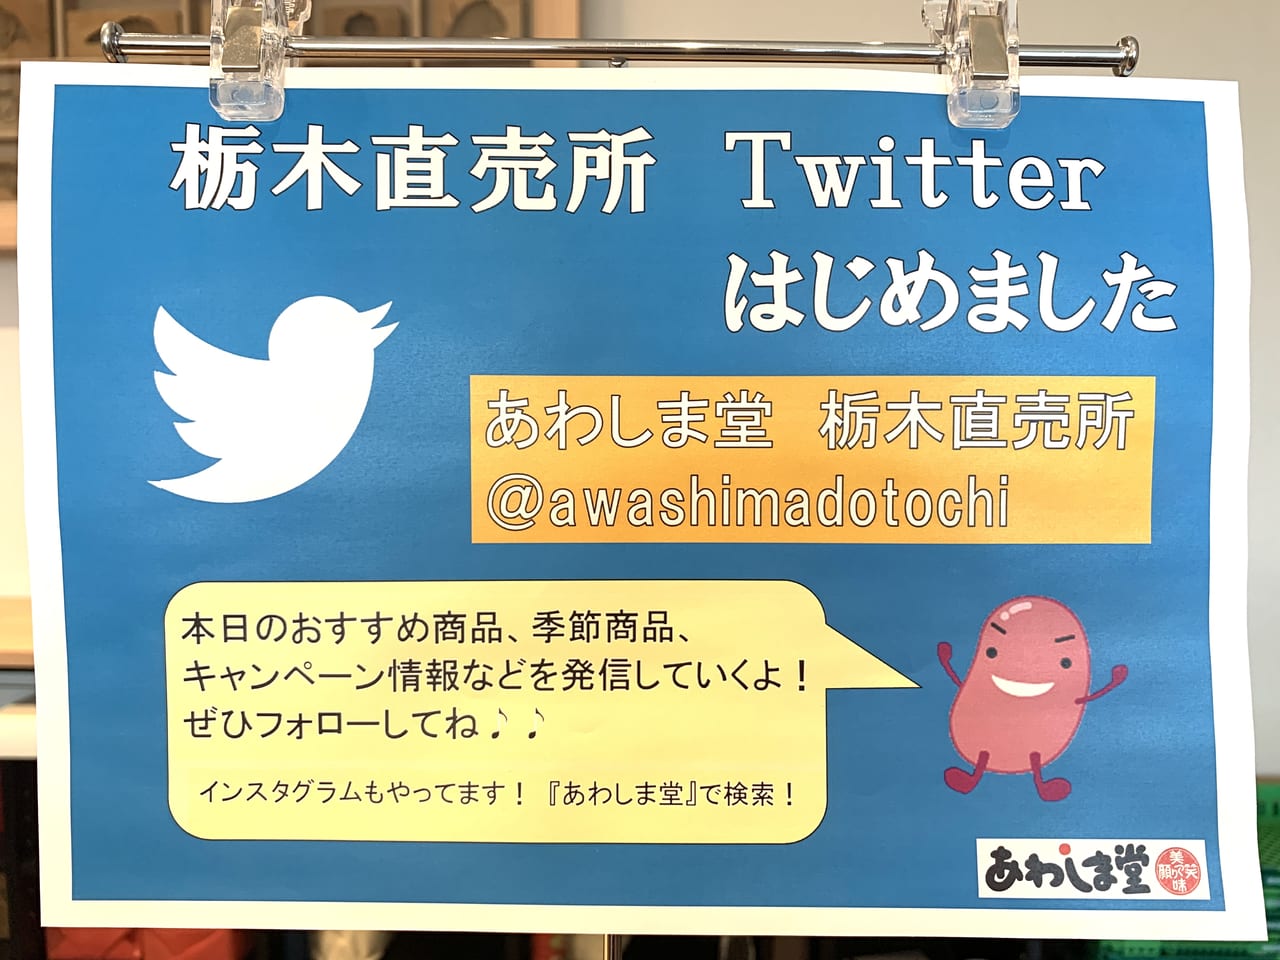 佐野市 あわしま堂 栃木直売所さんの公式twitterが開設されました 旬でお得な情報満載 号外net 足利市 佐野市